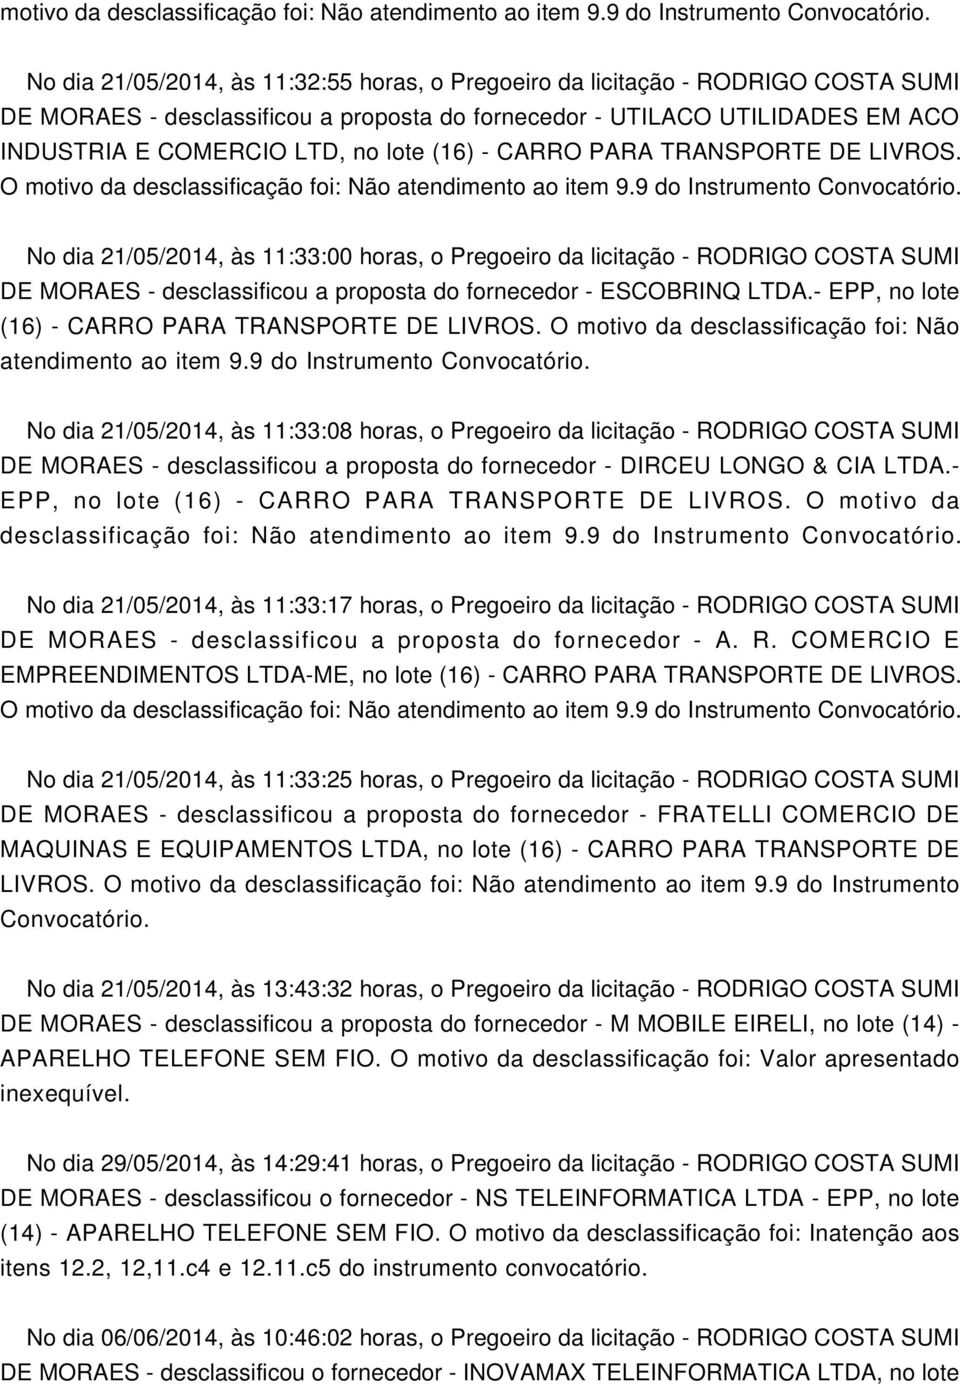 9 do No dia 21/05/2014, às 11:33:08 horas, o Pregoeiro da licitação - RODRIGO COSTA SUMI DE MORAES - desclassificou a proposta do fornecedor - DIRCEU LONGO & CIA LTDA.